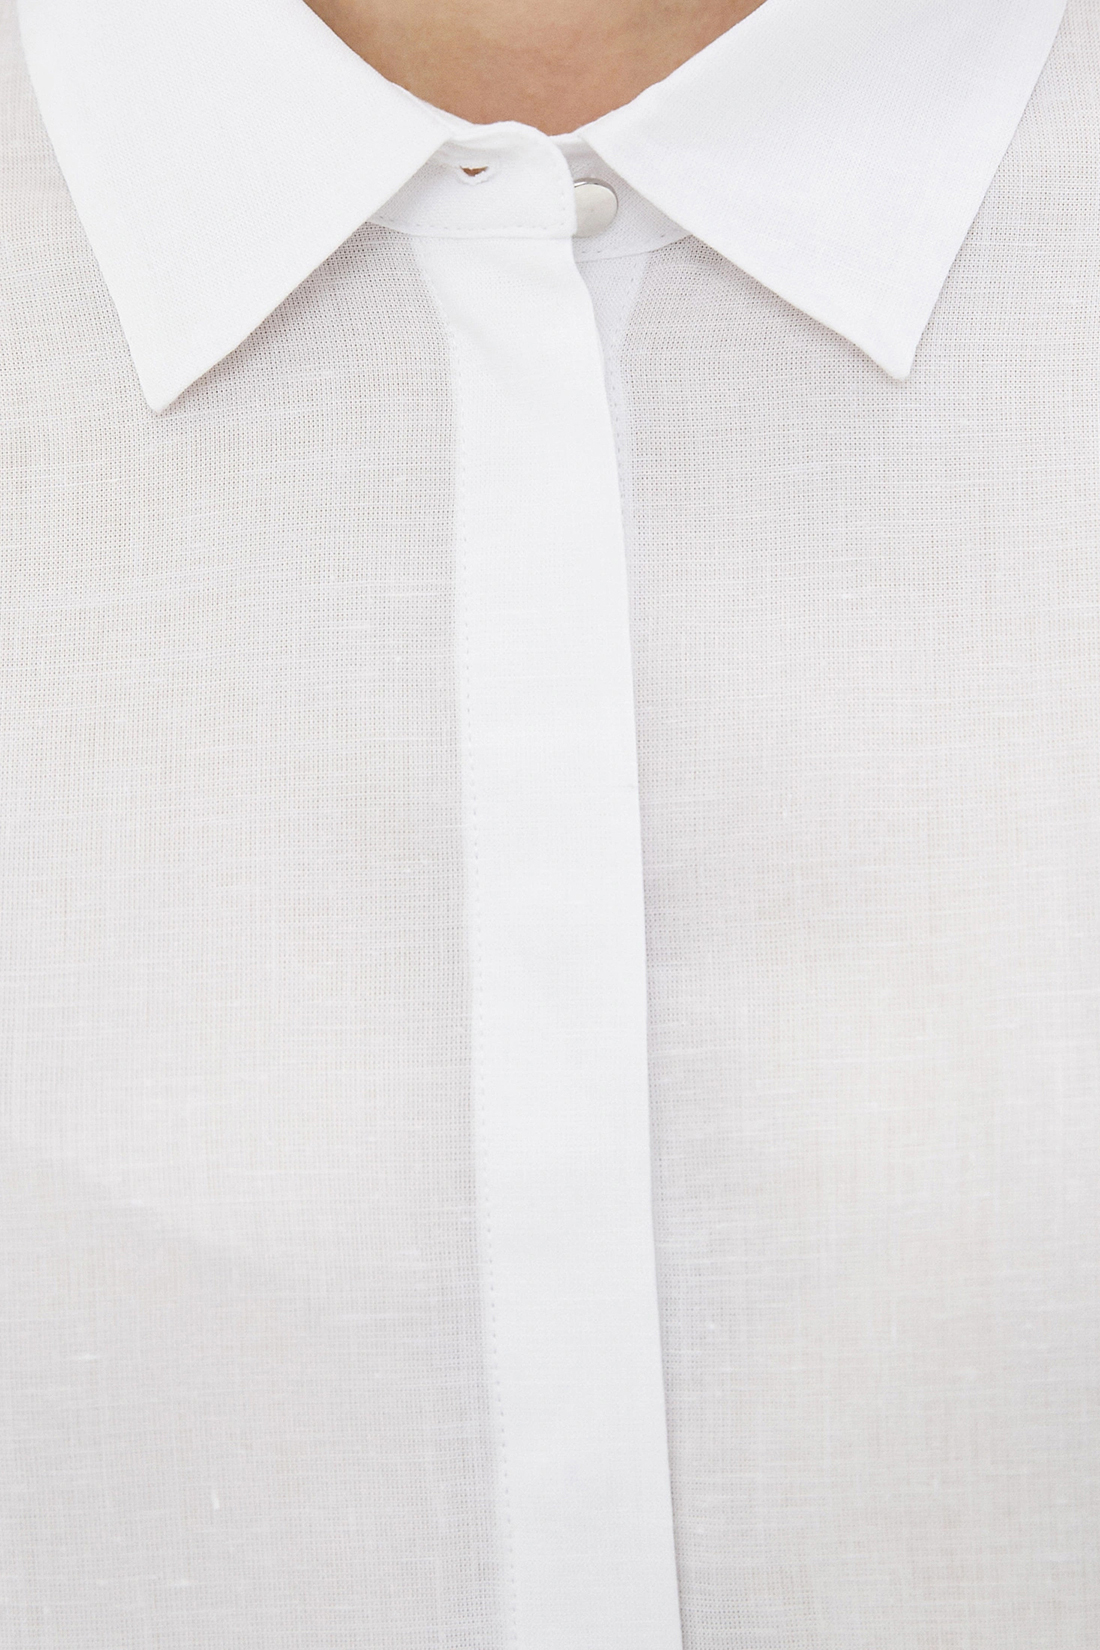 Рубашка женская Baon B171001 белая XXL